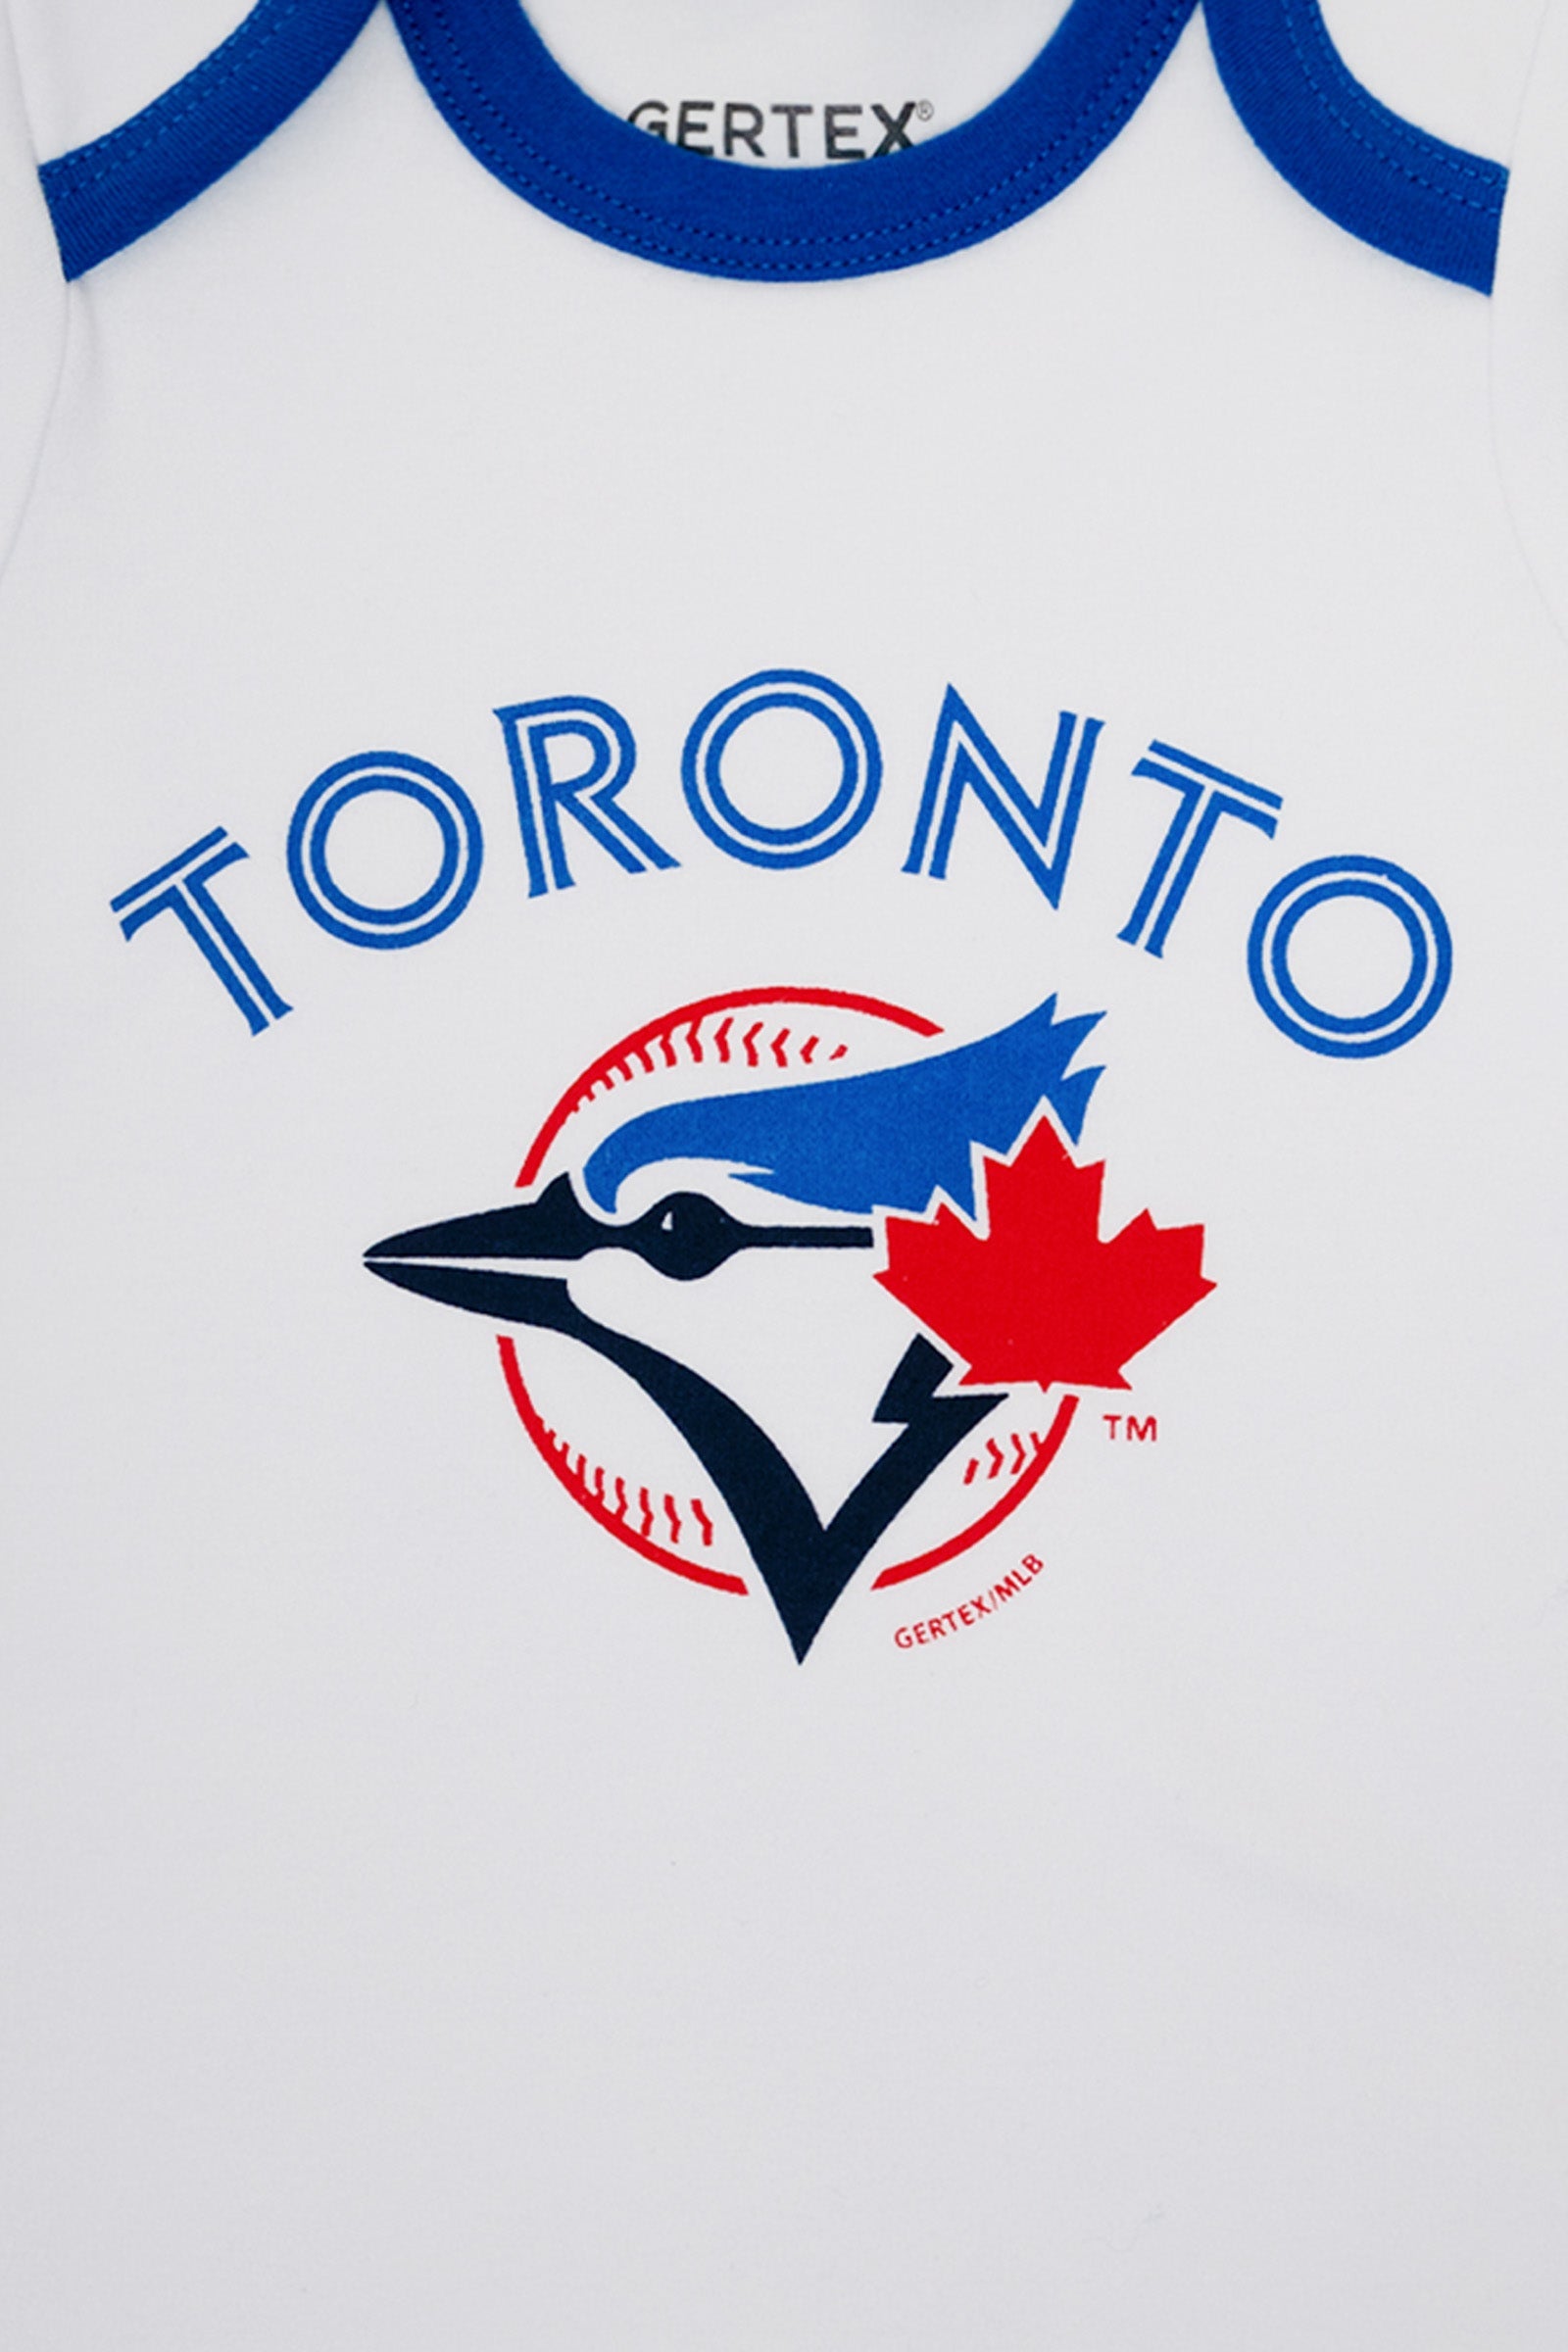 MLB Toronto Blue Jays 3-Pack Baby Bodysuits